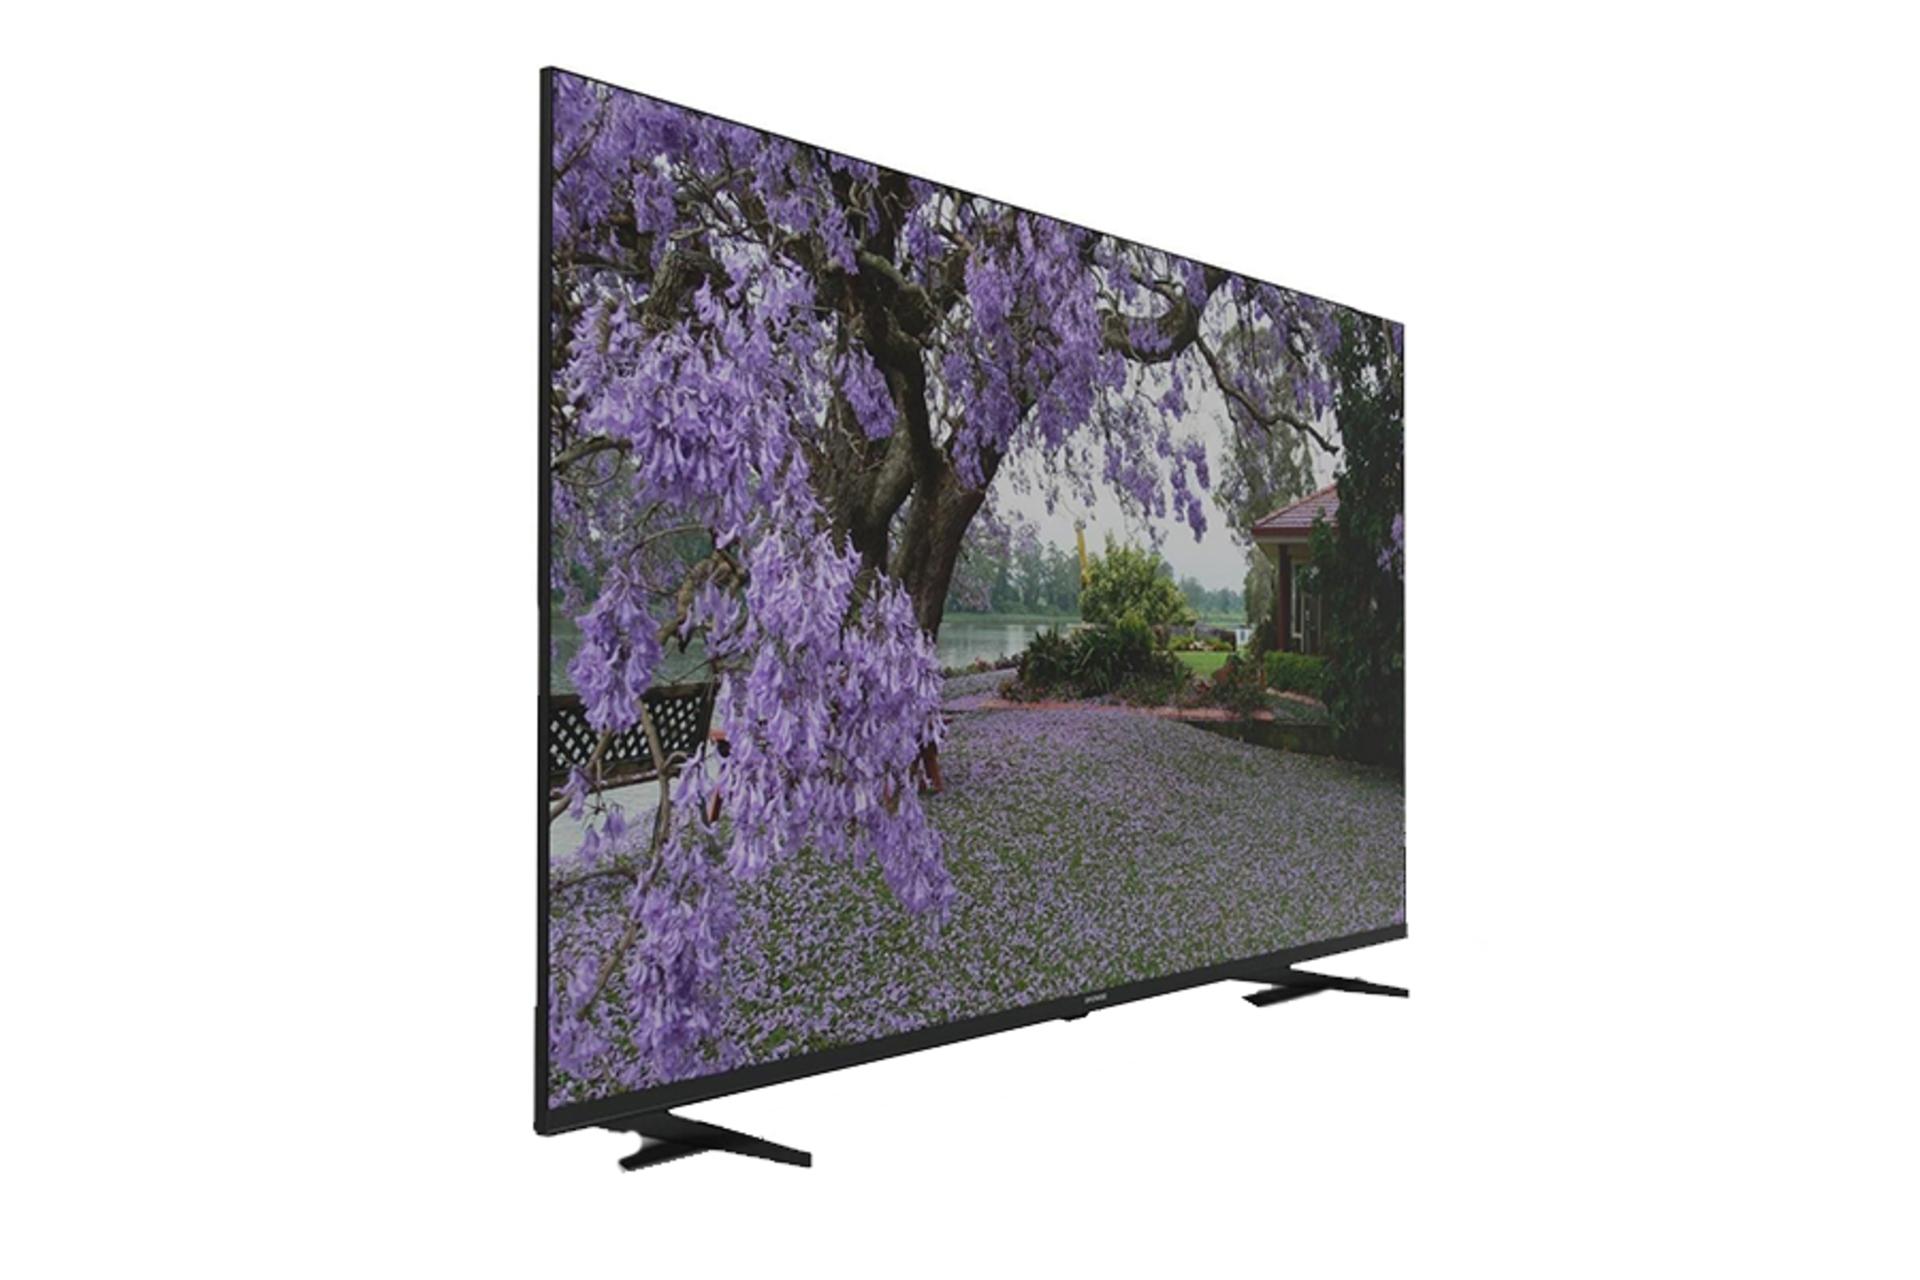 قیمت تلویزیون دوو 50SU1750I مدل 50 اینچ + مشخصات